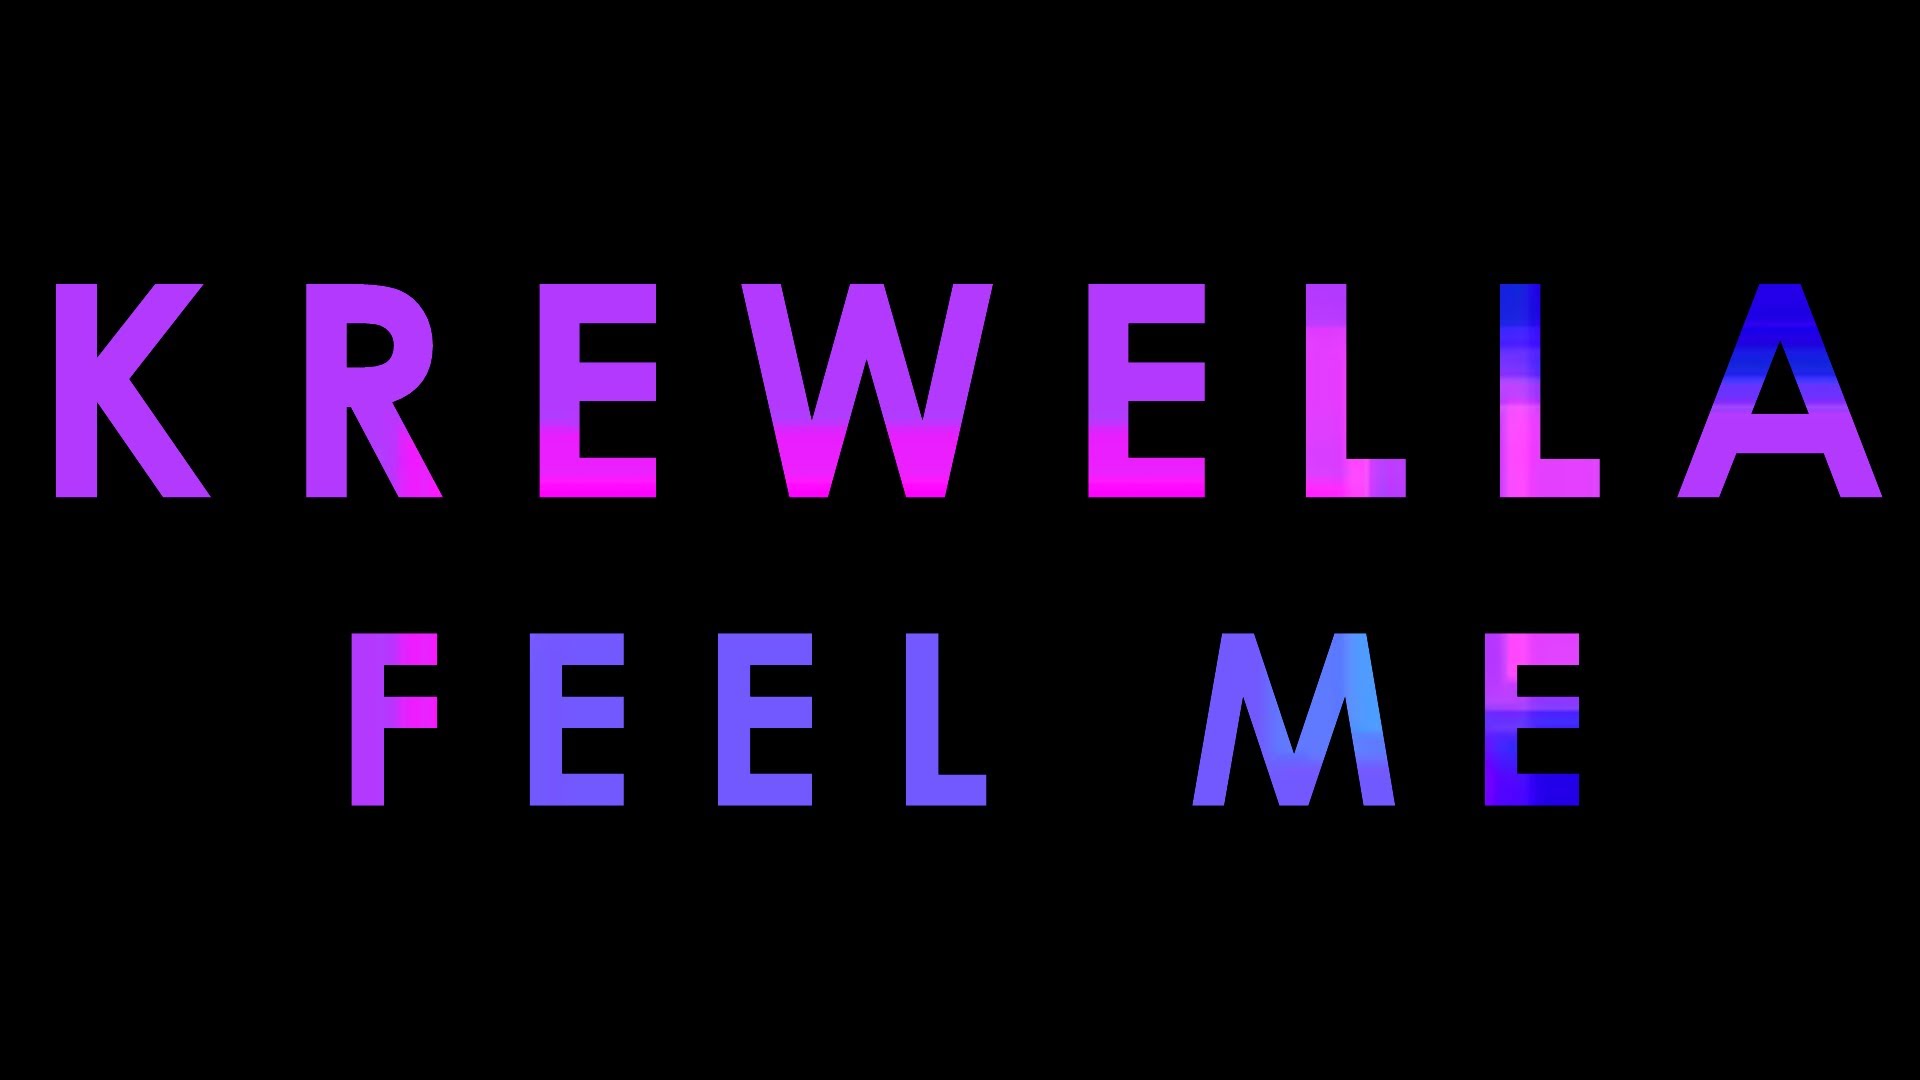 Lyrics】FEEL ME - KREWELLA - YouTube